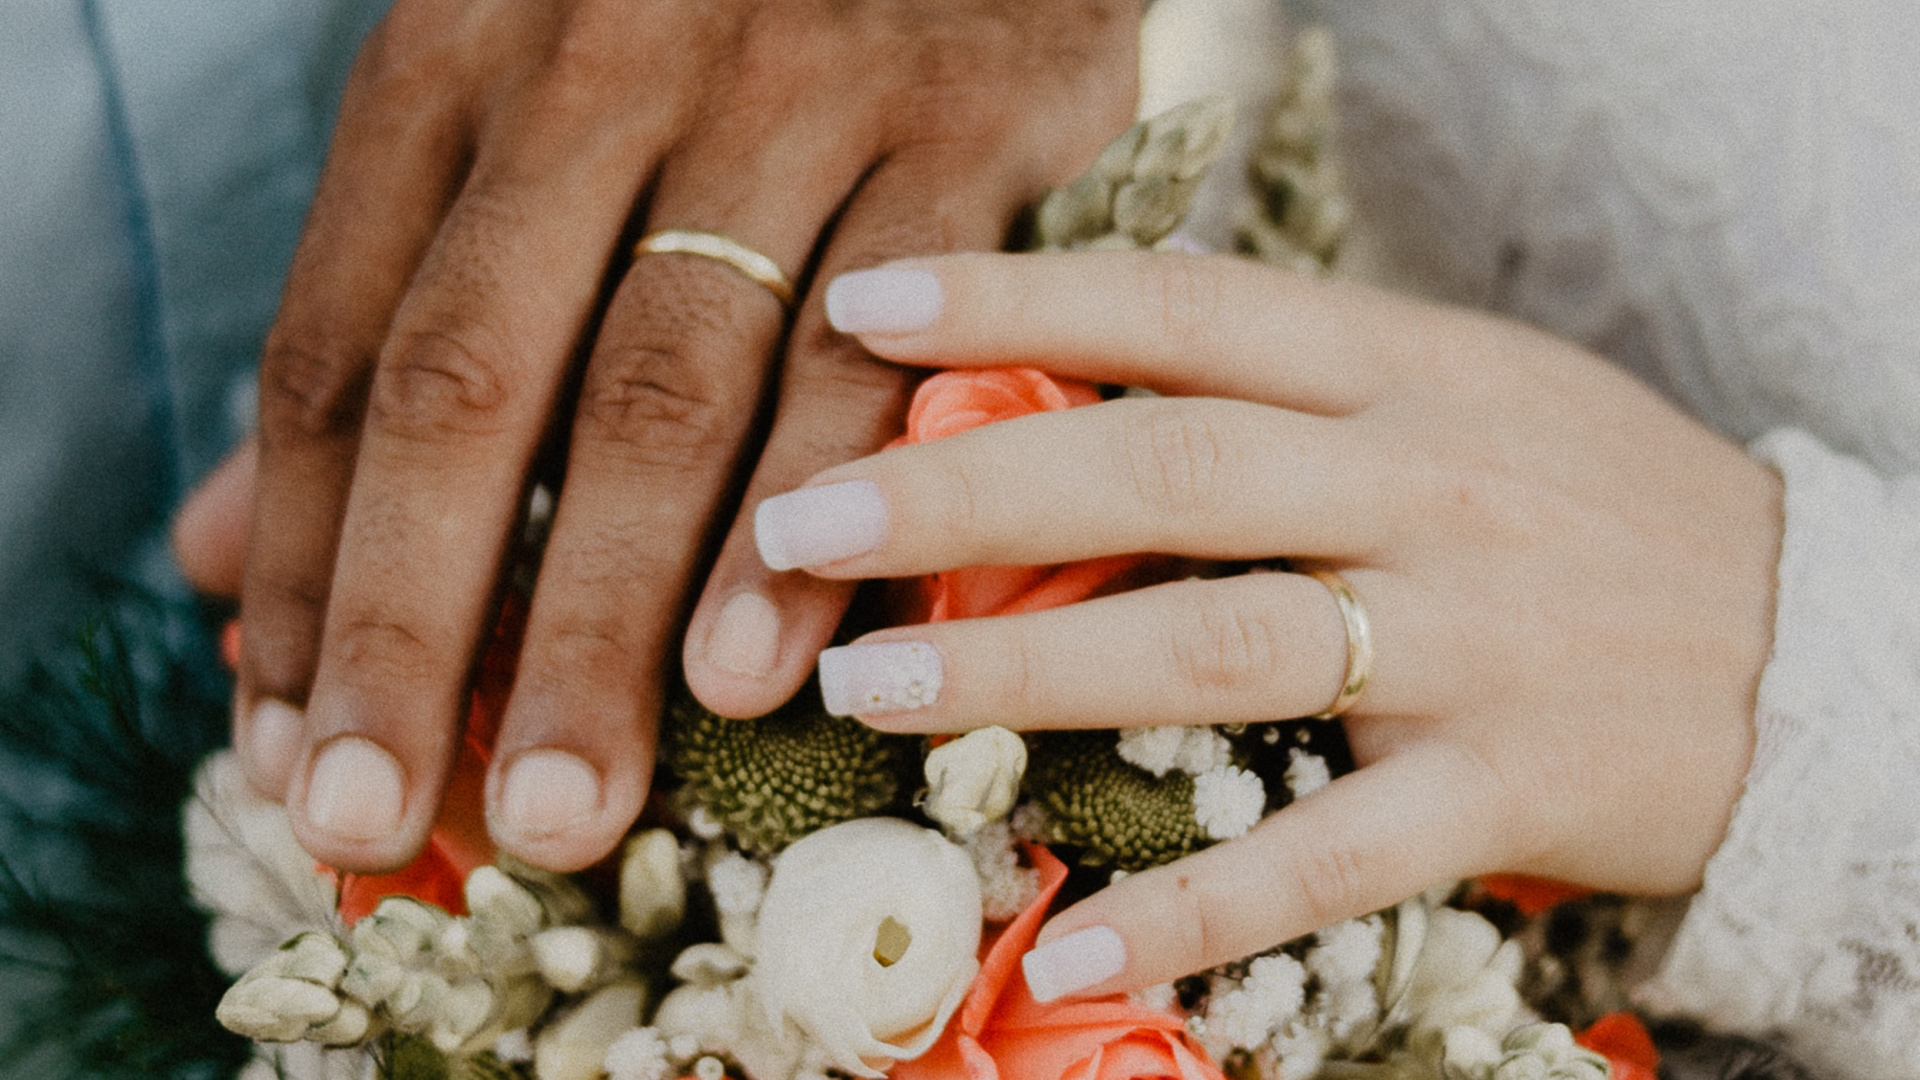 结婚戒指, 的婚礼仪式供应, 手, 婚礼礼服, 手臂 壁纸 1920x1080 允许